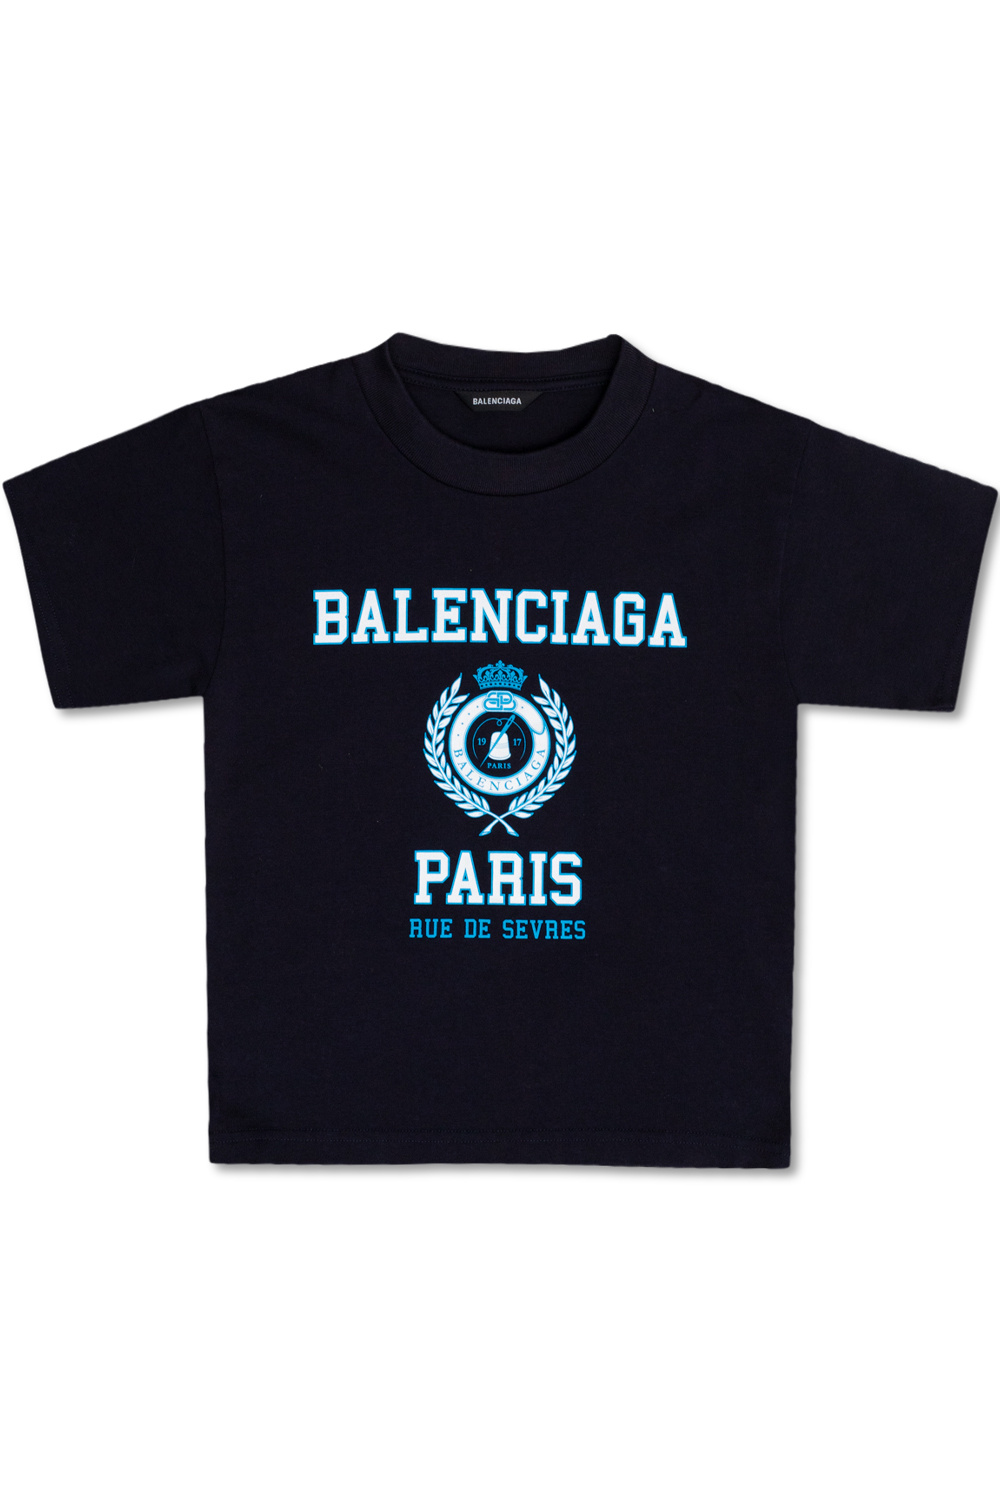 Balenciaga Kids Logo T-shirt